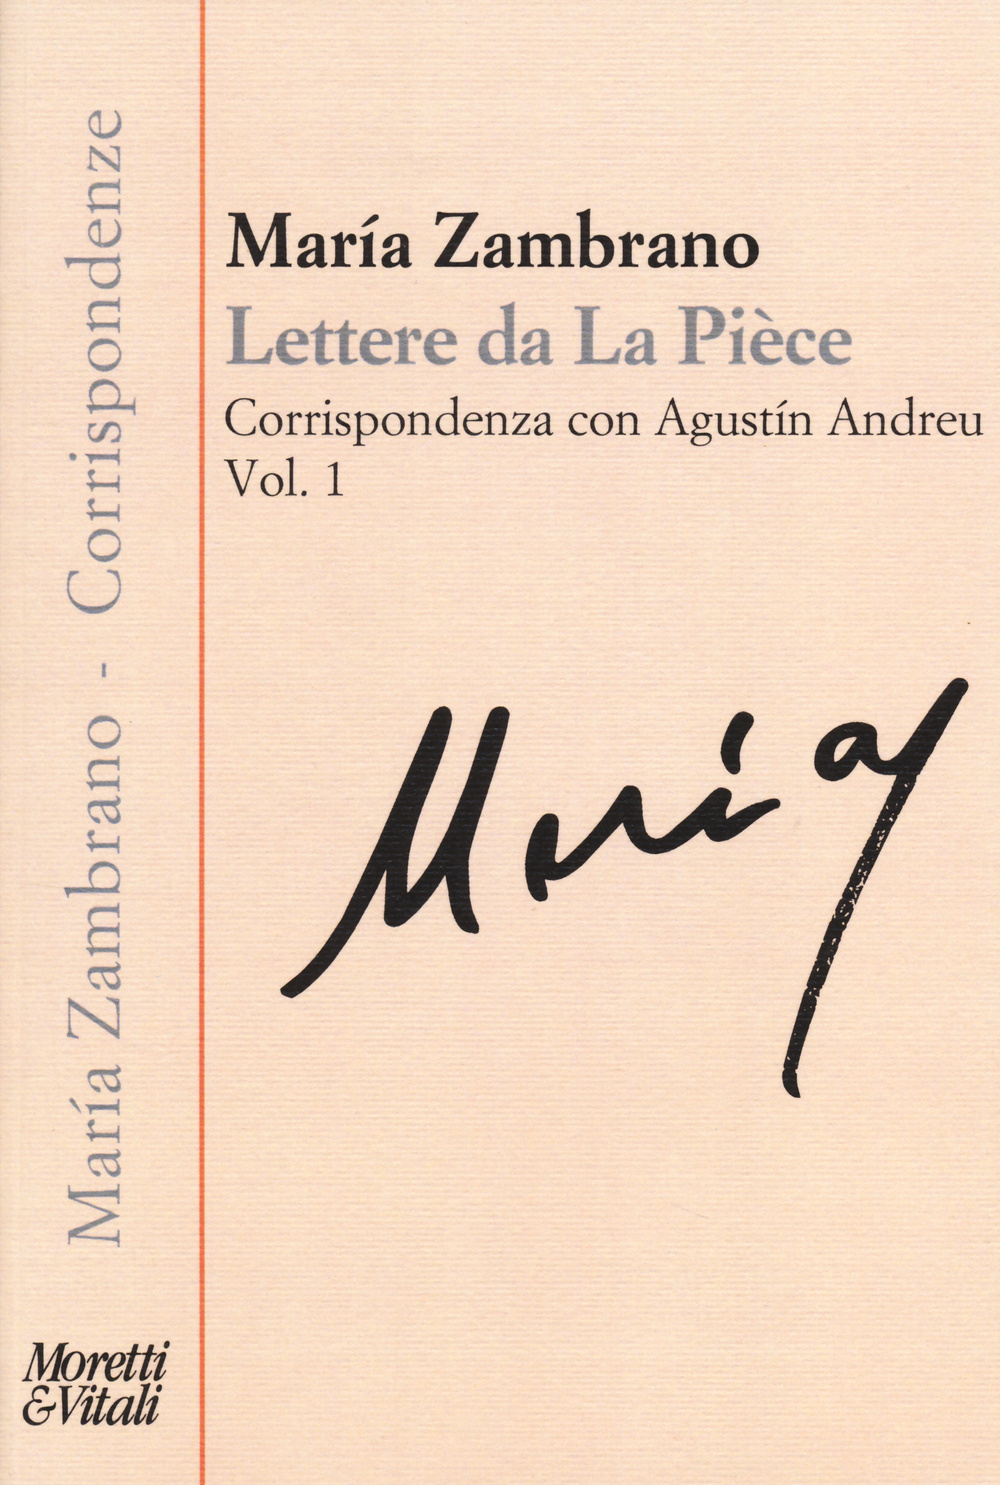 Lettere da La Pièce. Corrispondenza con Agustín Andreu. Vol. 1: 1973-febbraio 1975